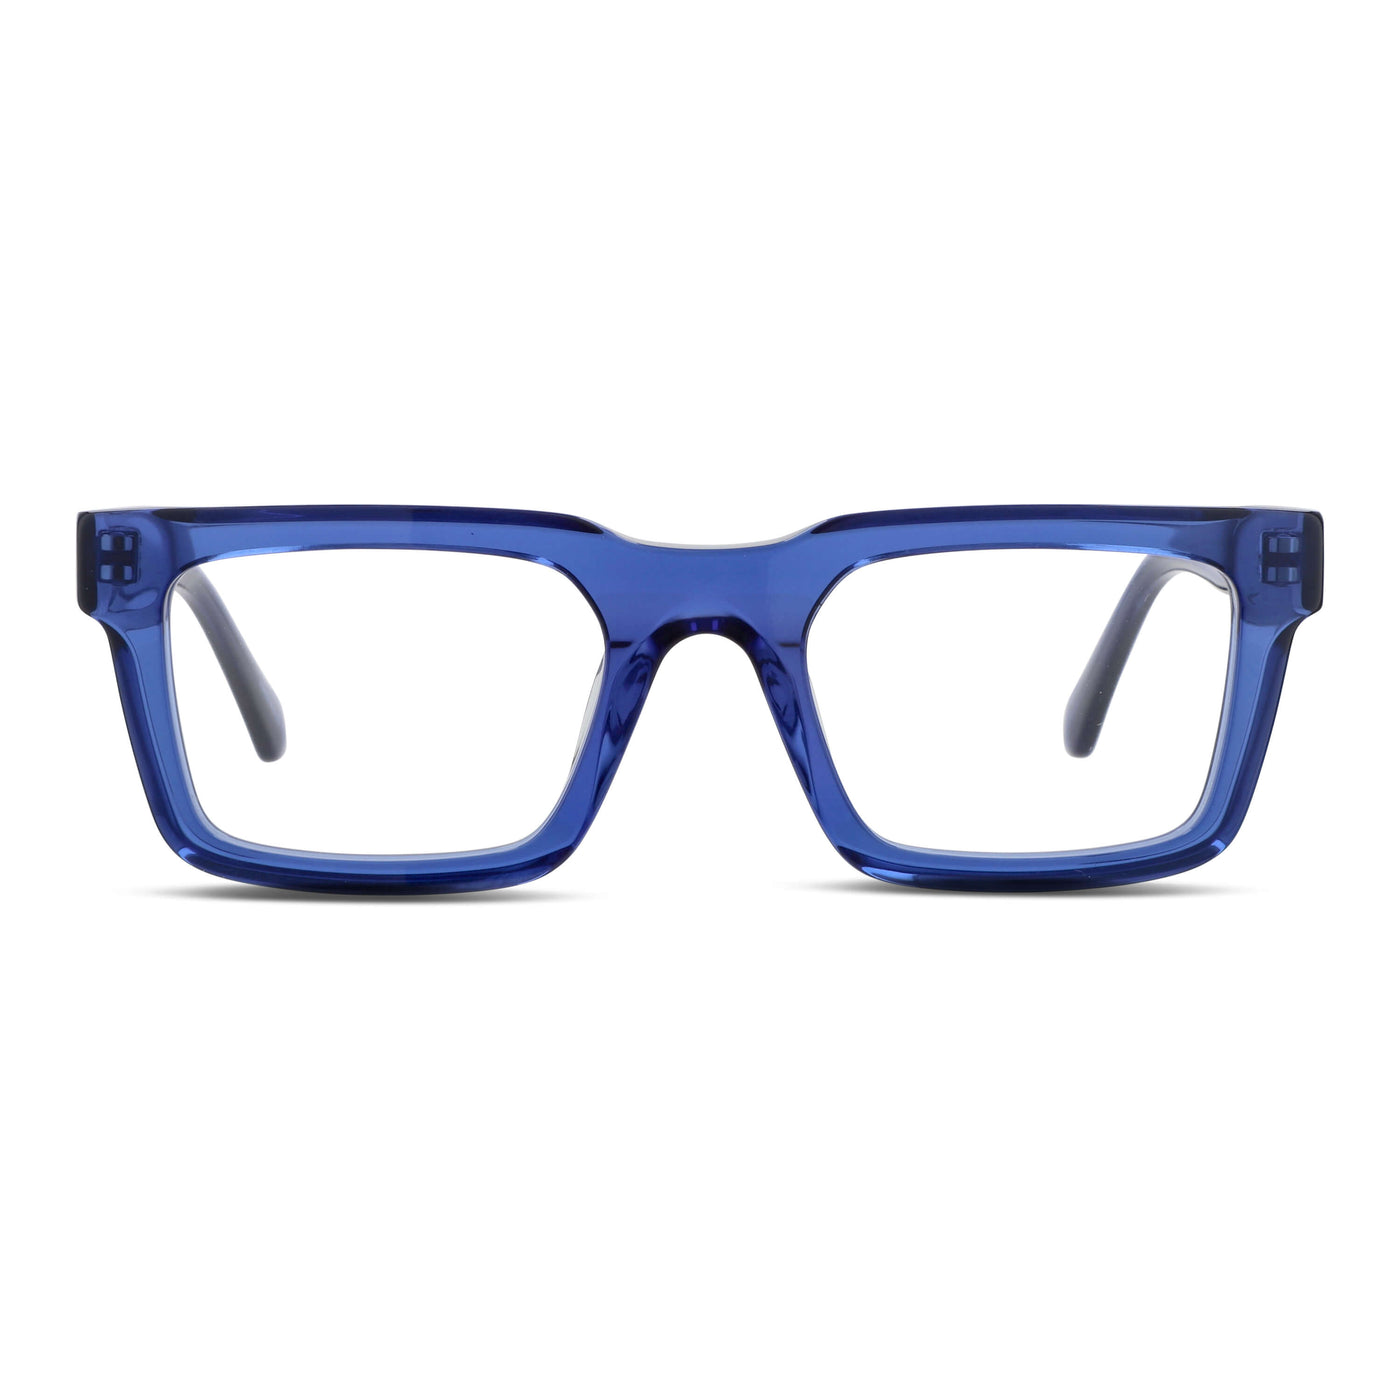  lentes rectangulares gruesos hombre cara redonda opticos multifocales bifocales receta mayorista distribuidor sustentables diseñador exclusivos azules.jpg